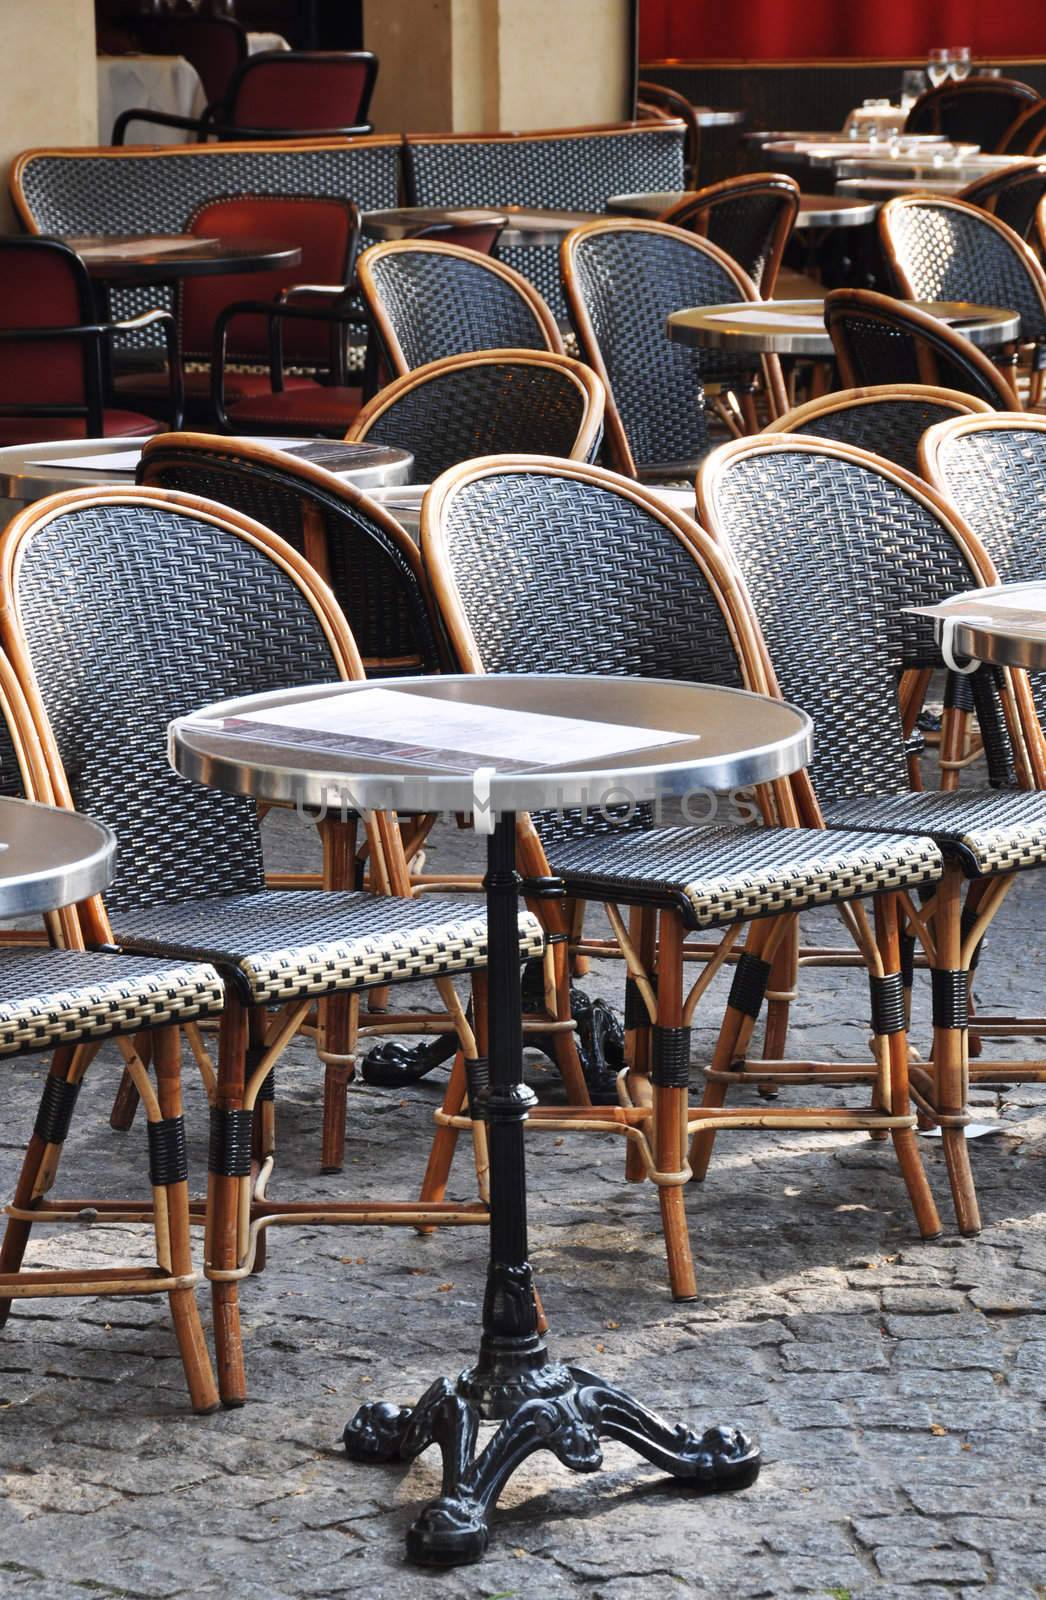 Cafe terrace in Paris by dutourdumonde